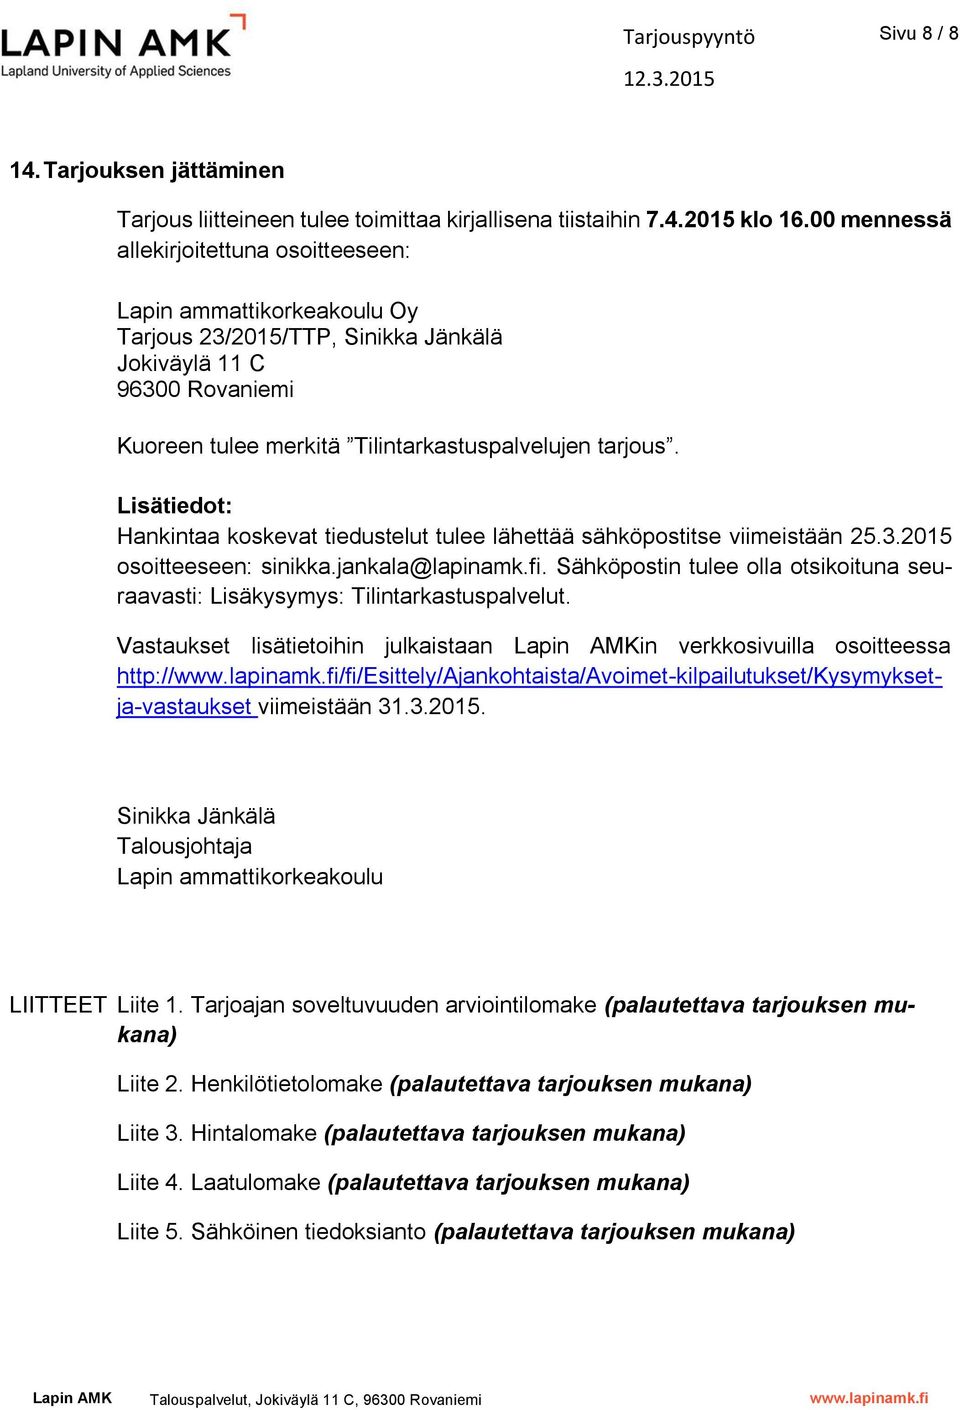 Lisätiedot: Hankintaa koskevat tiedustelut tulee lähettää sähköpostitse viimeistään 25.3.2015 osoitteeseen: sinikka.jankala@lapinamk.fi.